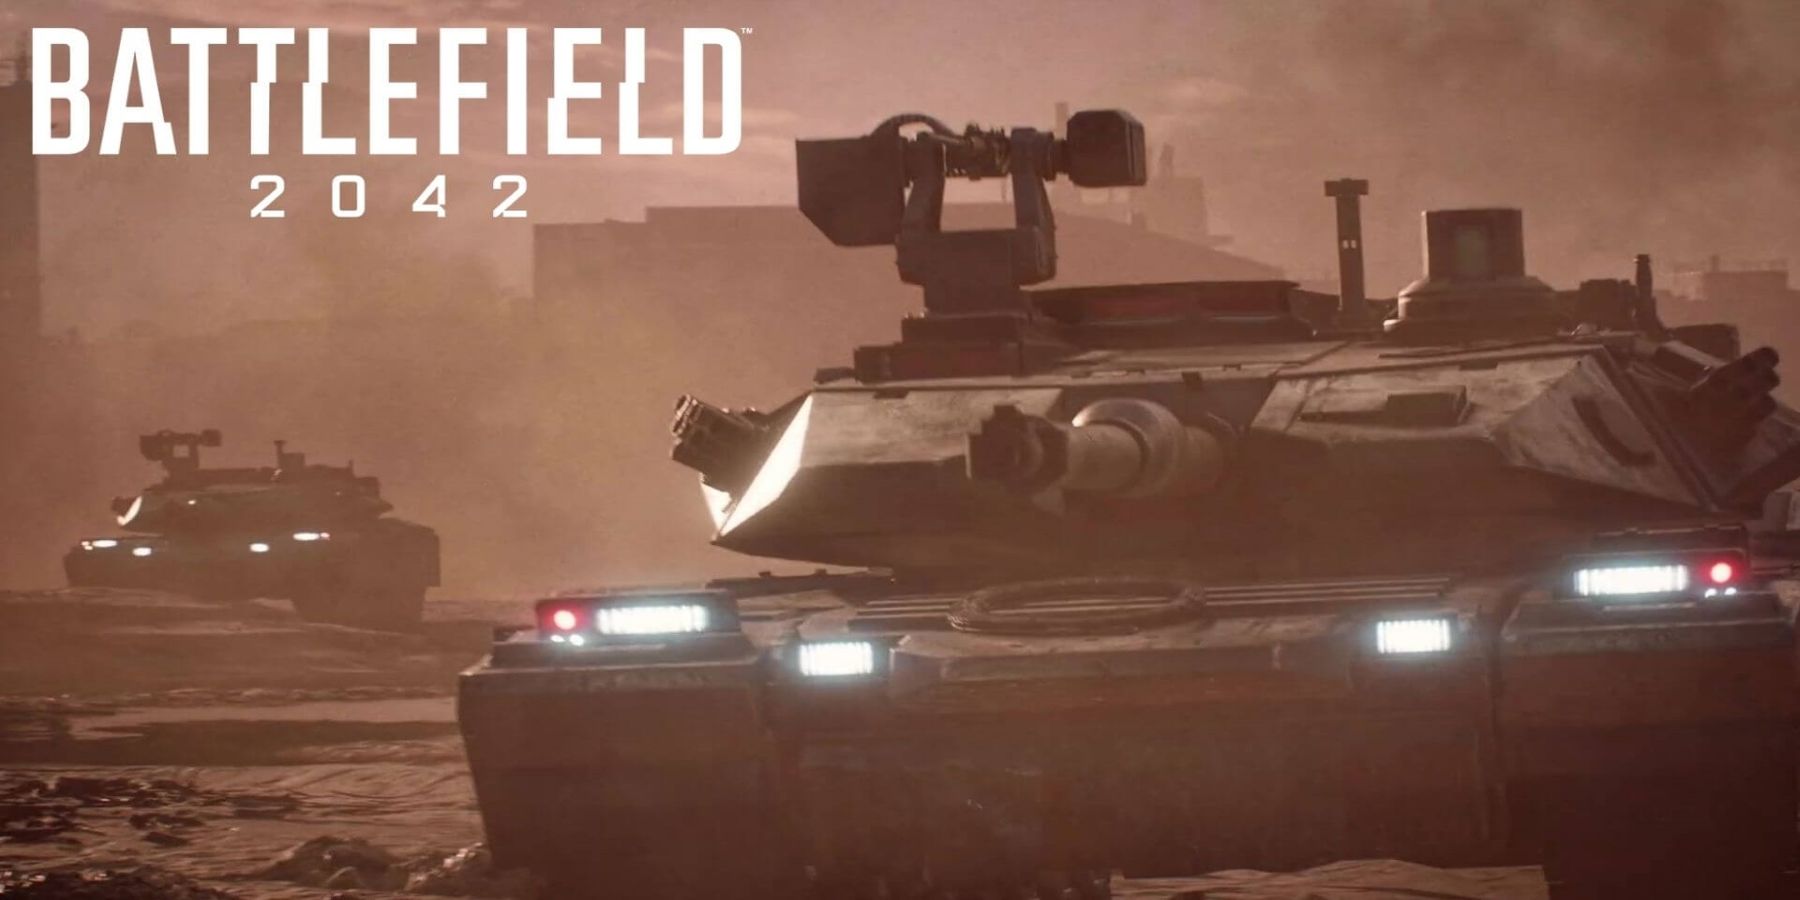 batlefield 2042 tank